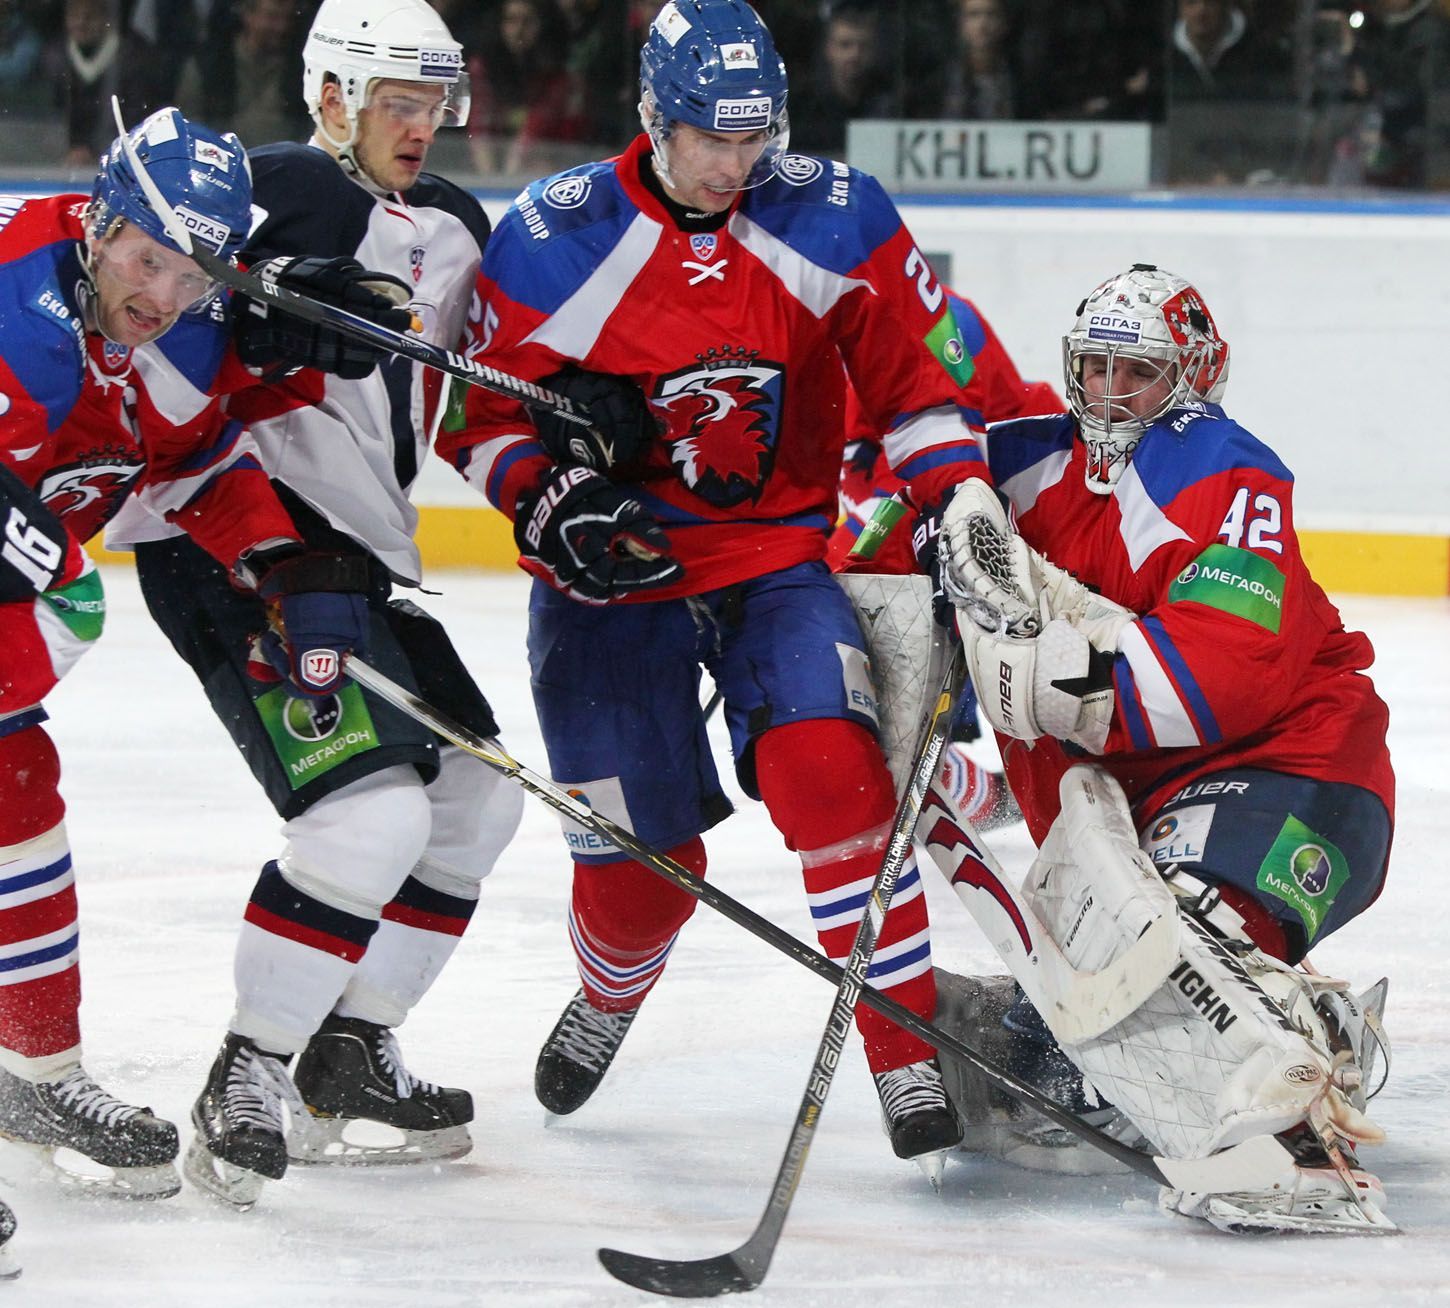 Hokejista Lva Praha Mathias Porseland a brankář Tomáš Pöpperle brání protihráče v utkání KHL 2012/13 proti Slovanu Bratislava.